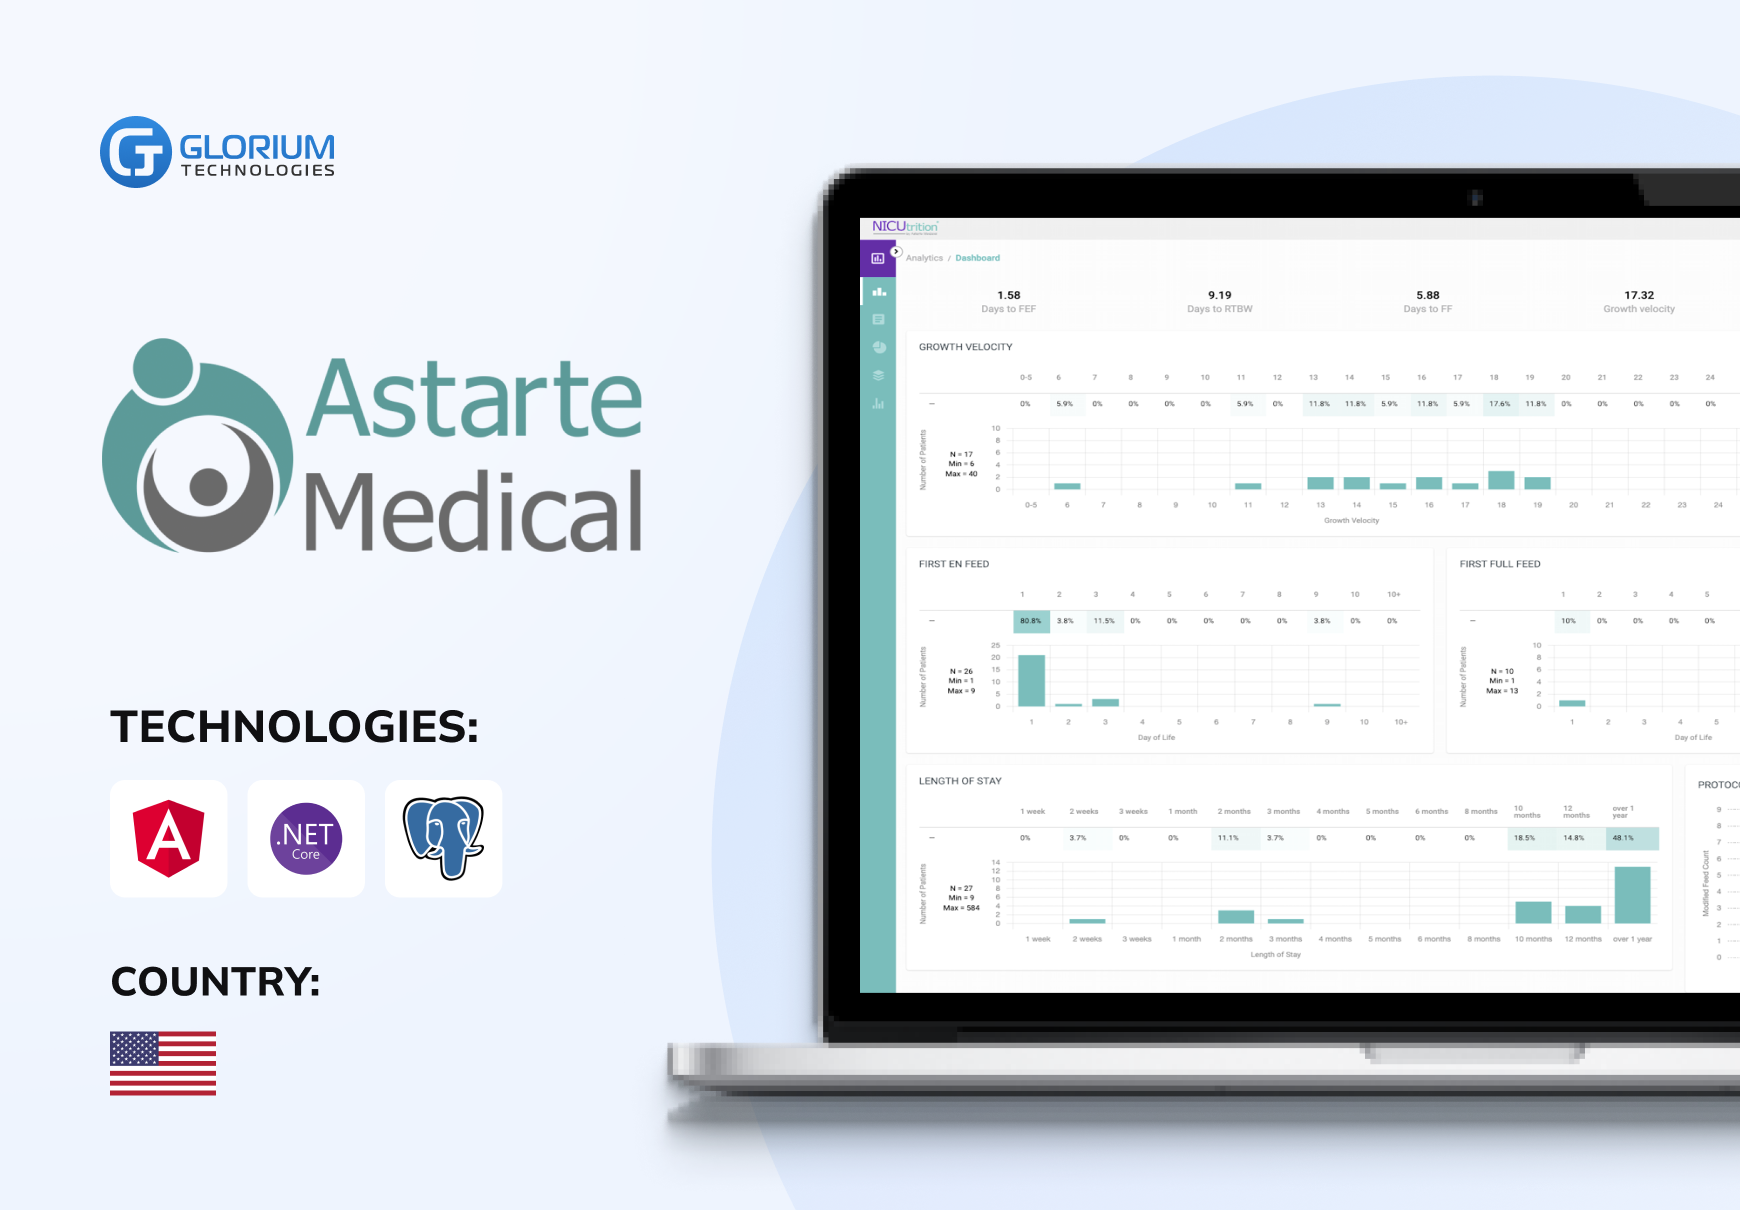 Astarte Medical